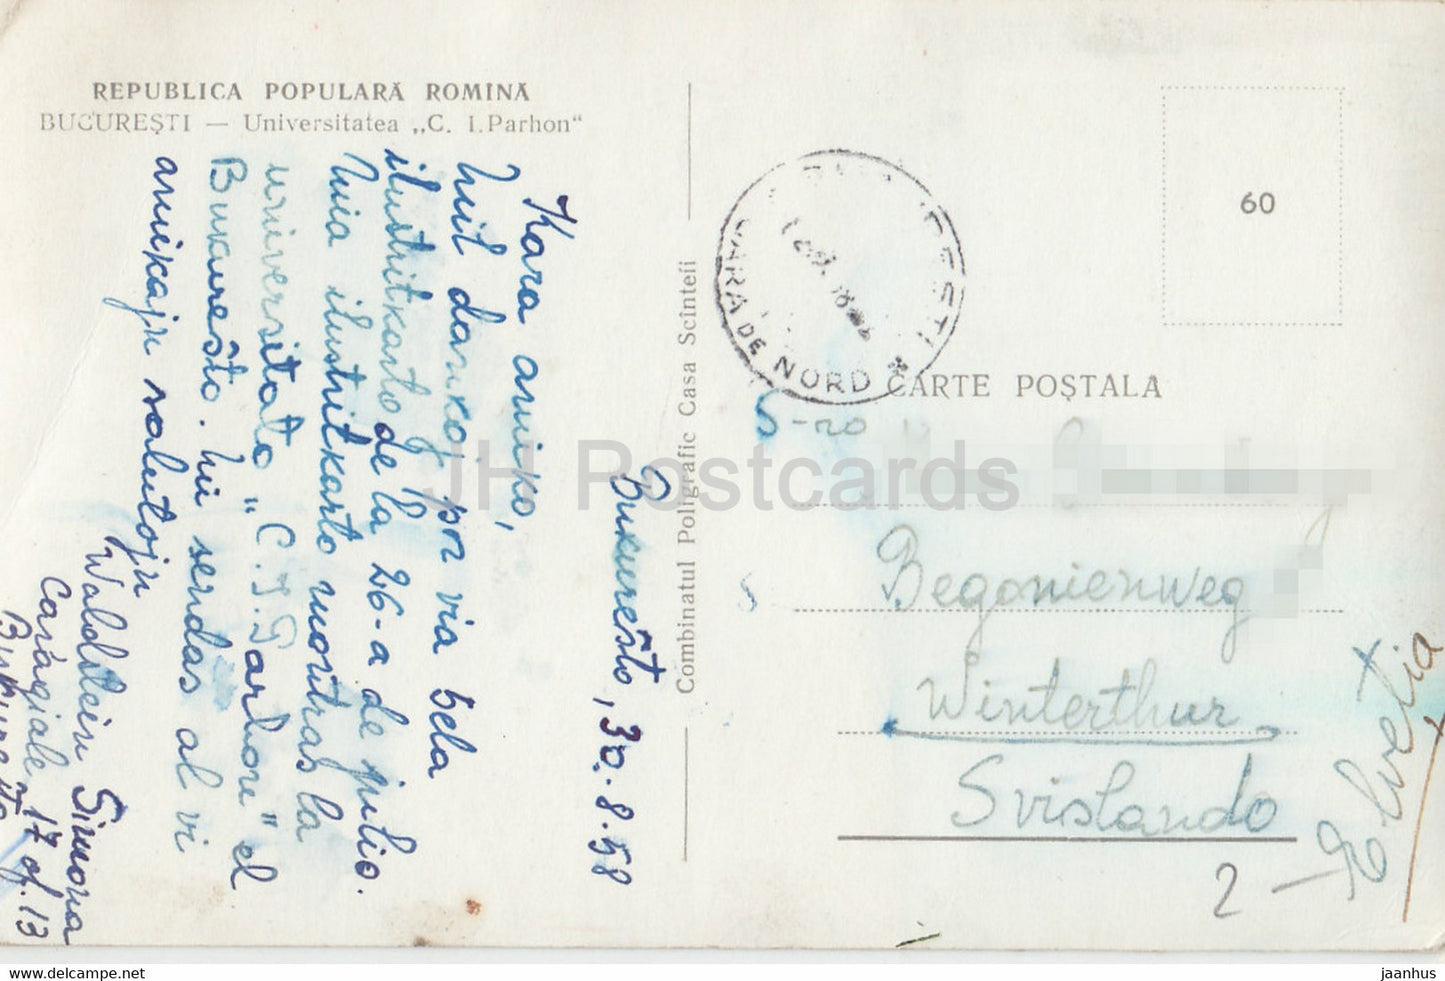 Bucharest - Bucuresti - Universitatea C I Parhon - tram - university - old postcard - 1958 - Romania - used